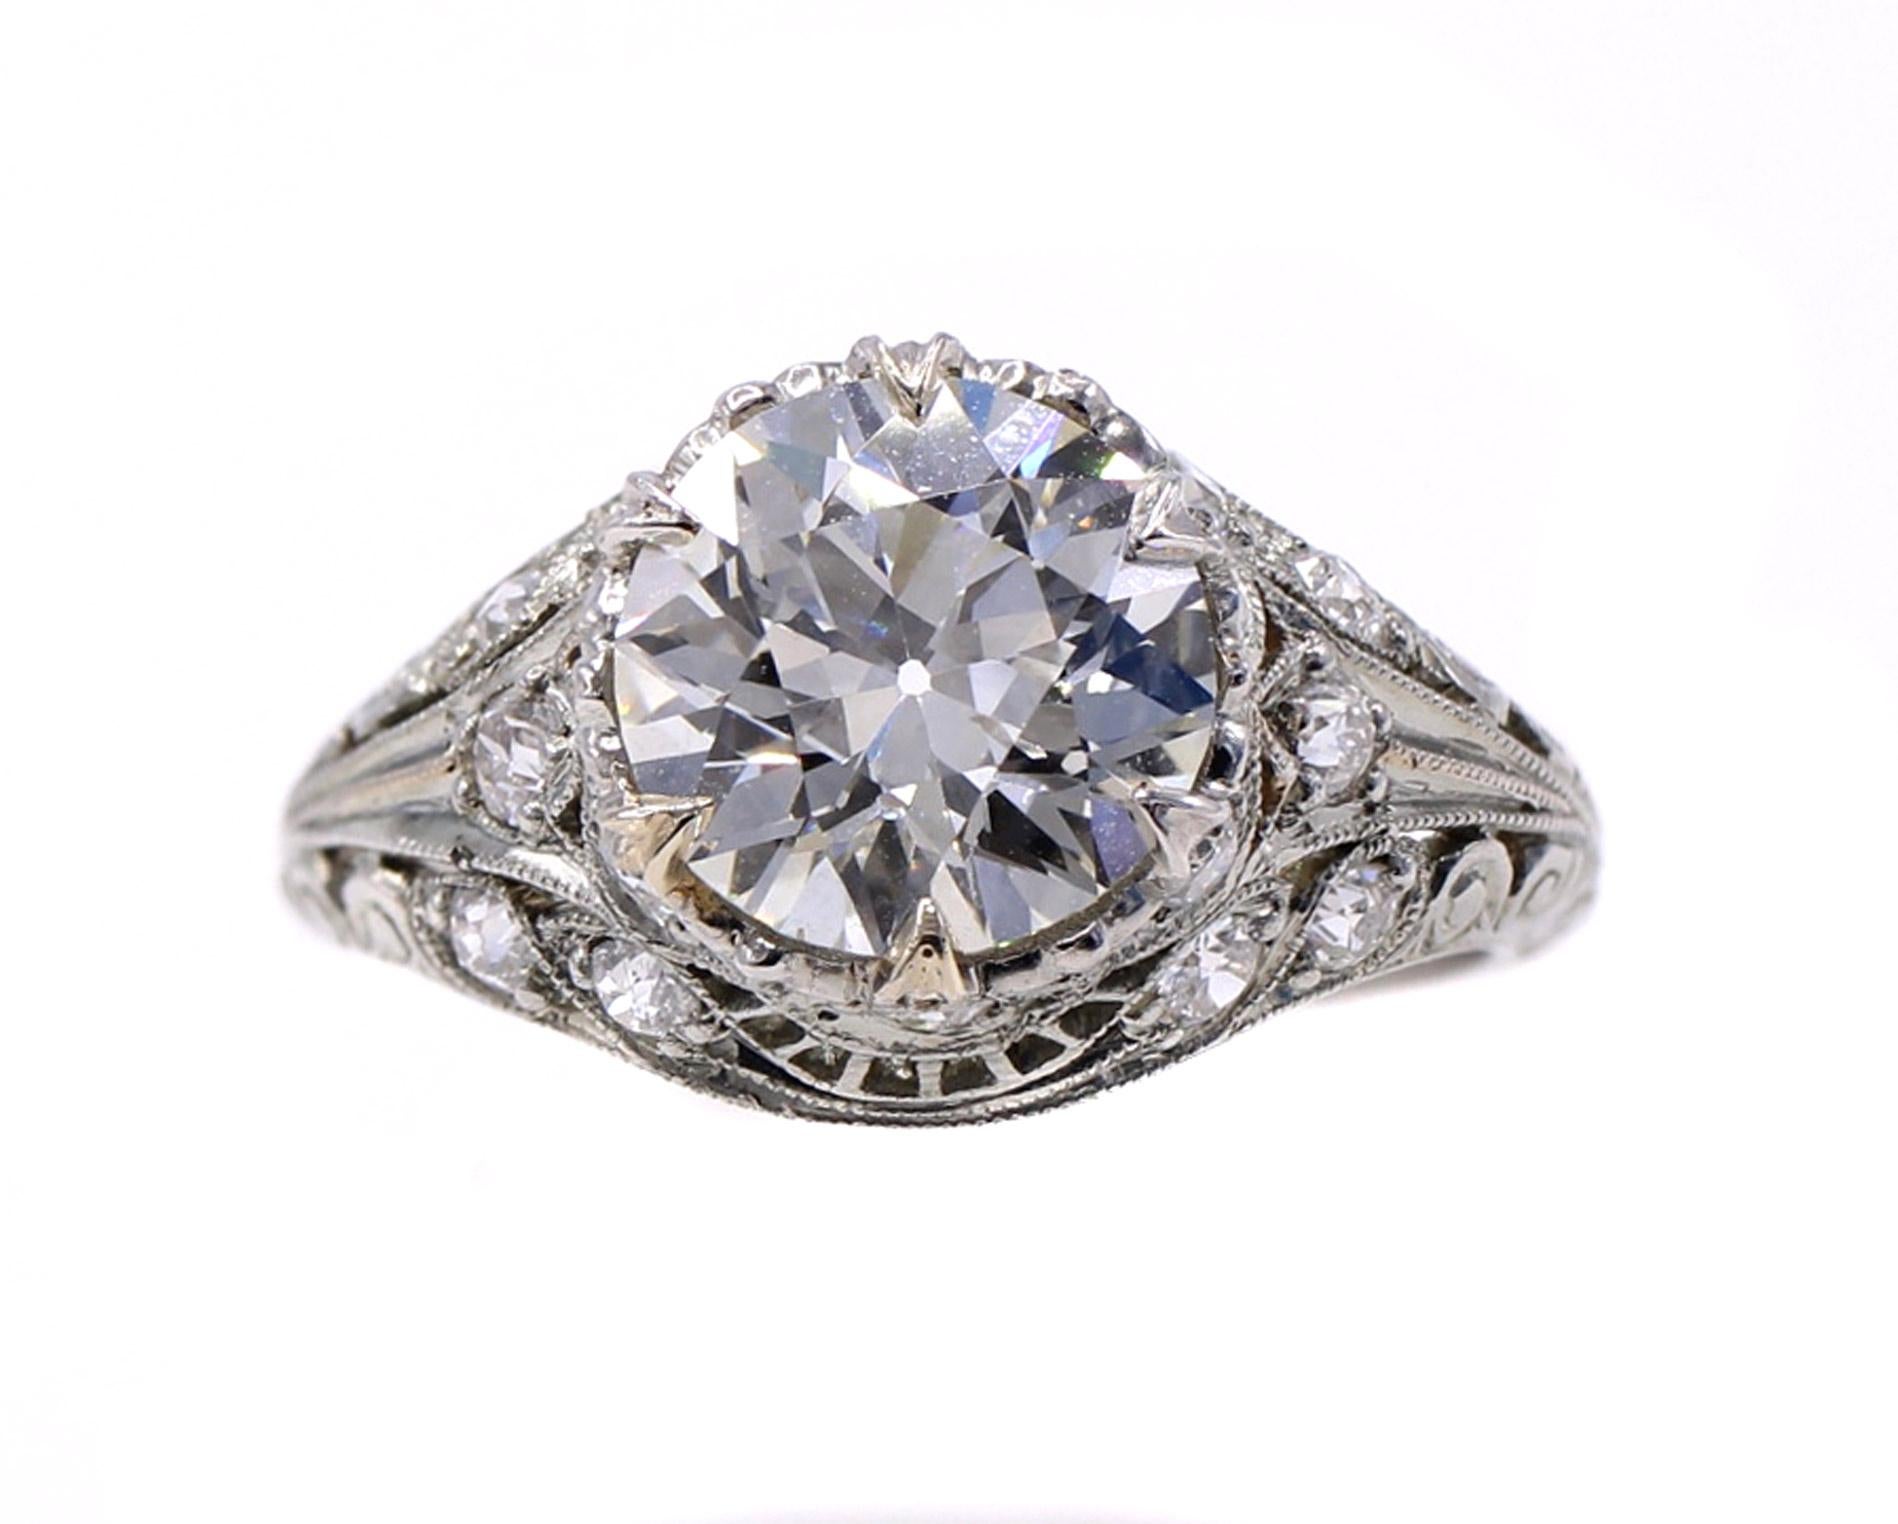 Un diamant de taille européenne ancienne, magnifiquement taillé et étincelant, est la pièce maîtresse de cette charmante bague de fiançailles Art déco bien travaillée, datant d'environ 1925. Le diamant central est accompagné d'un rapport du GIA lui